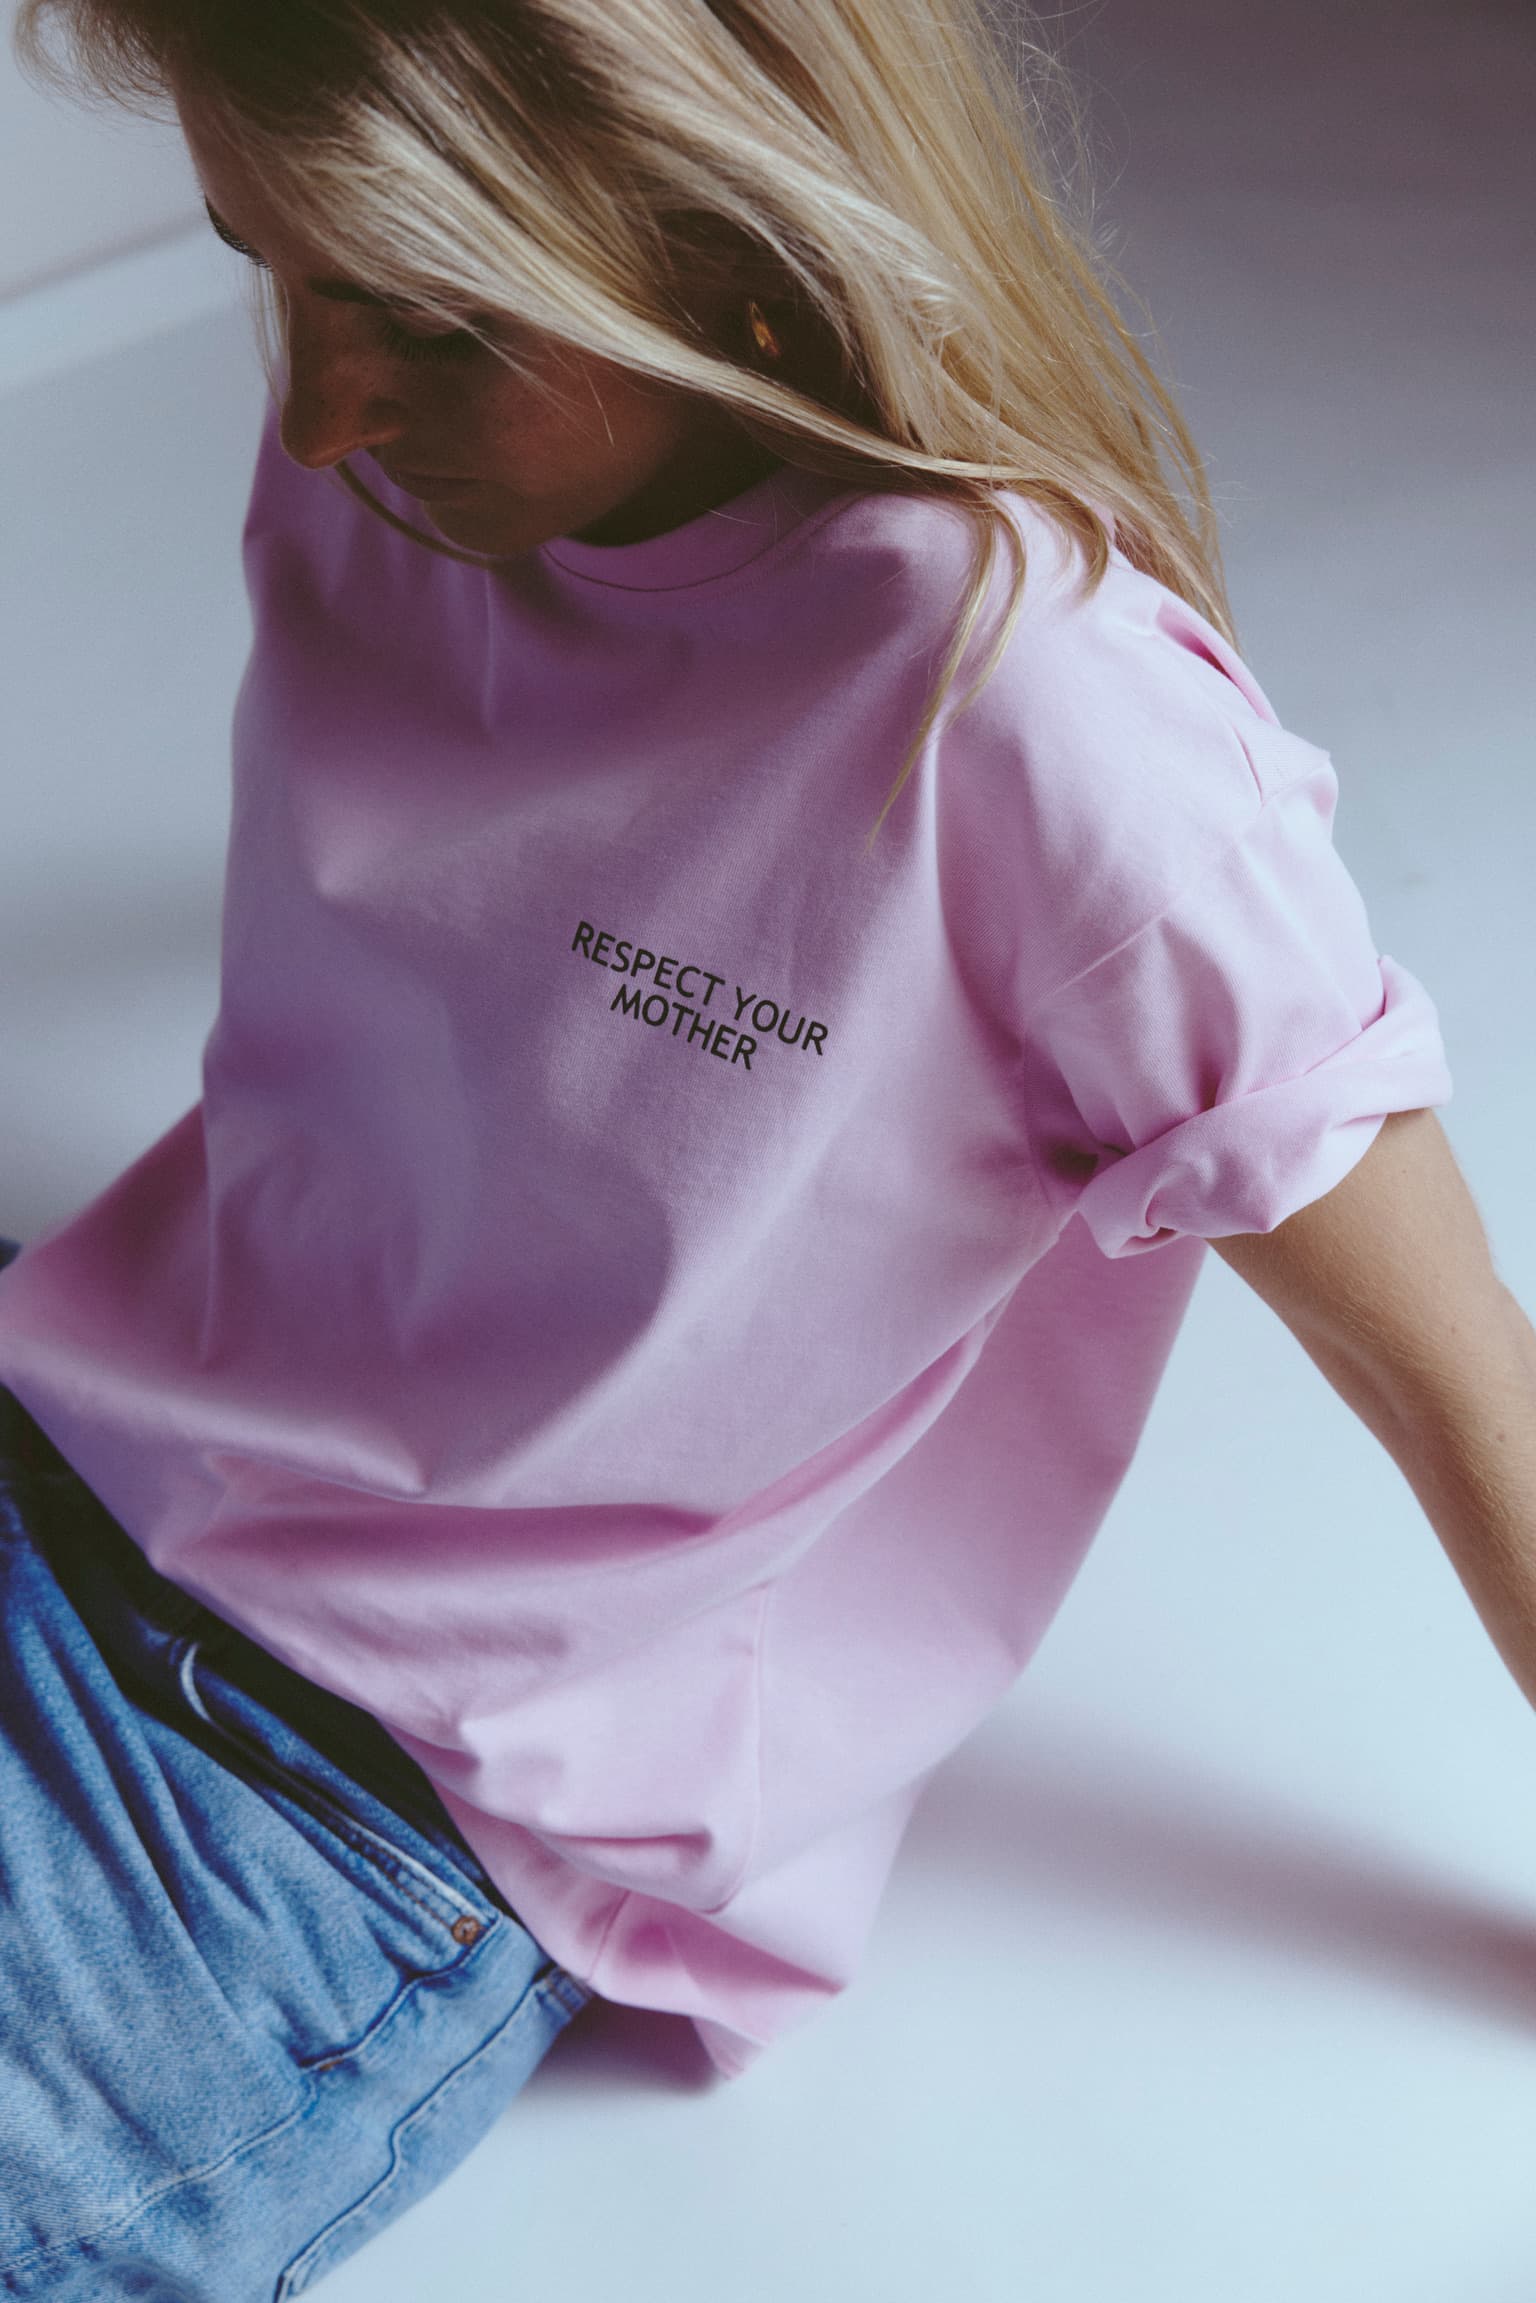 Pink Cotton Modal Shirt and Pants Loungewear – Amra Fashion